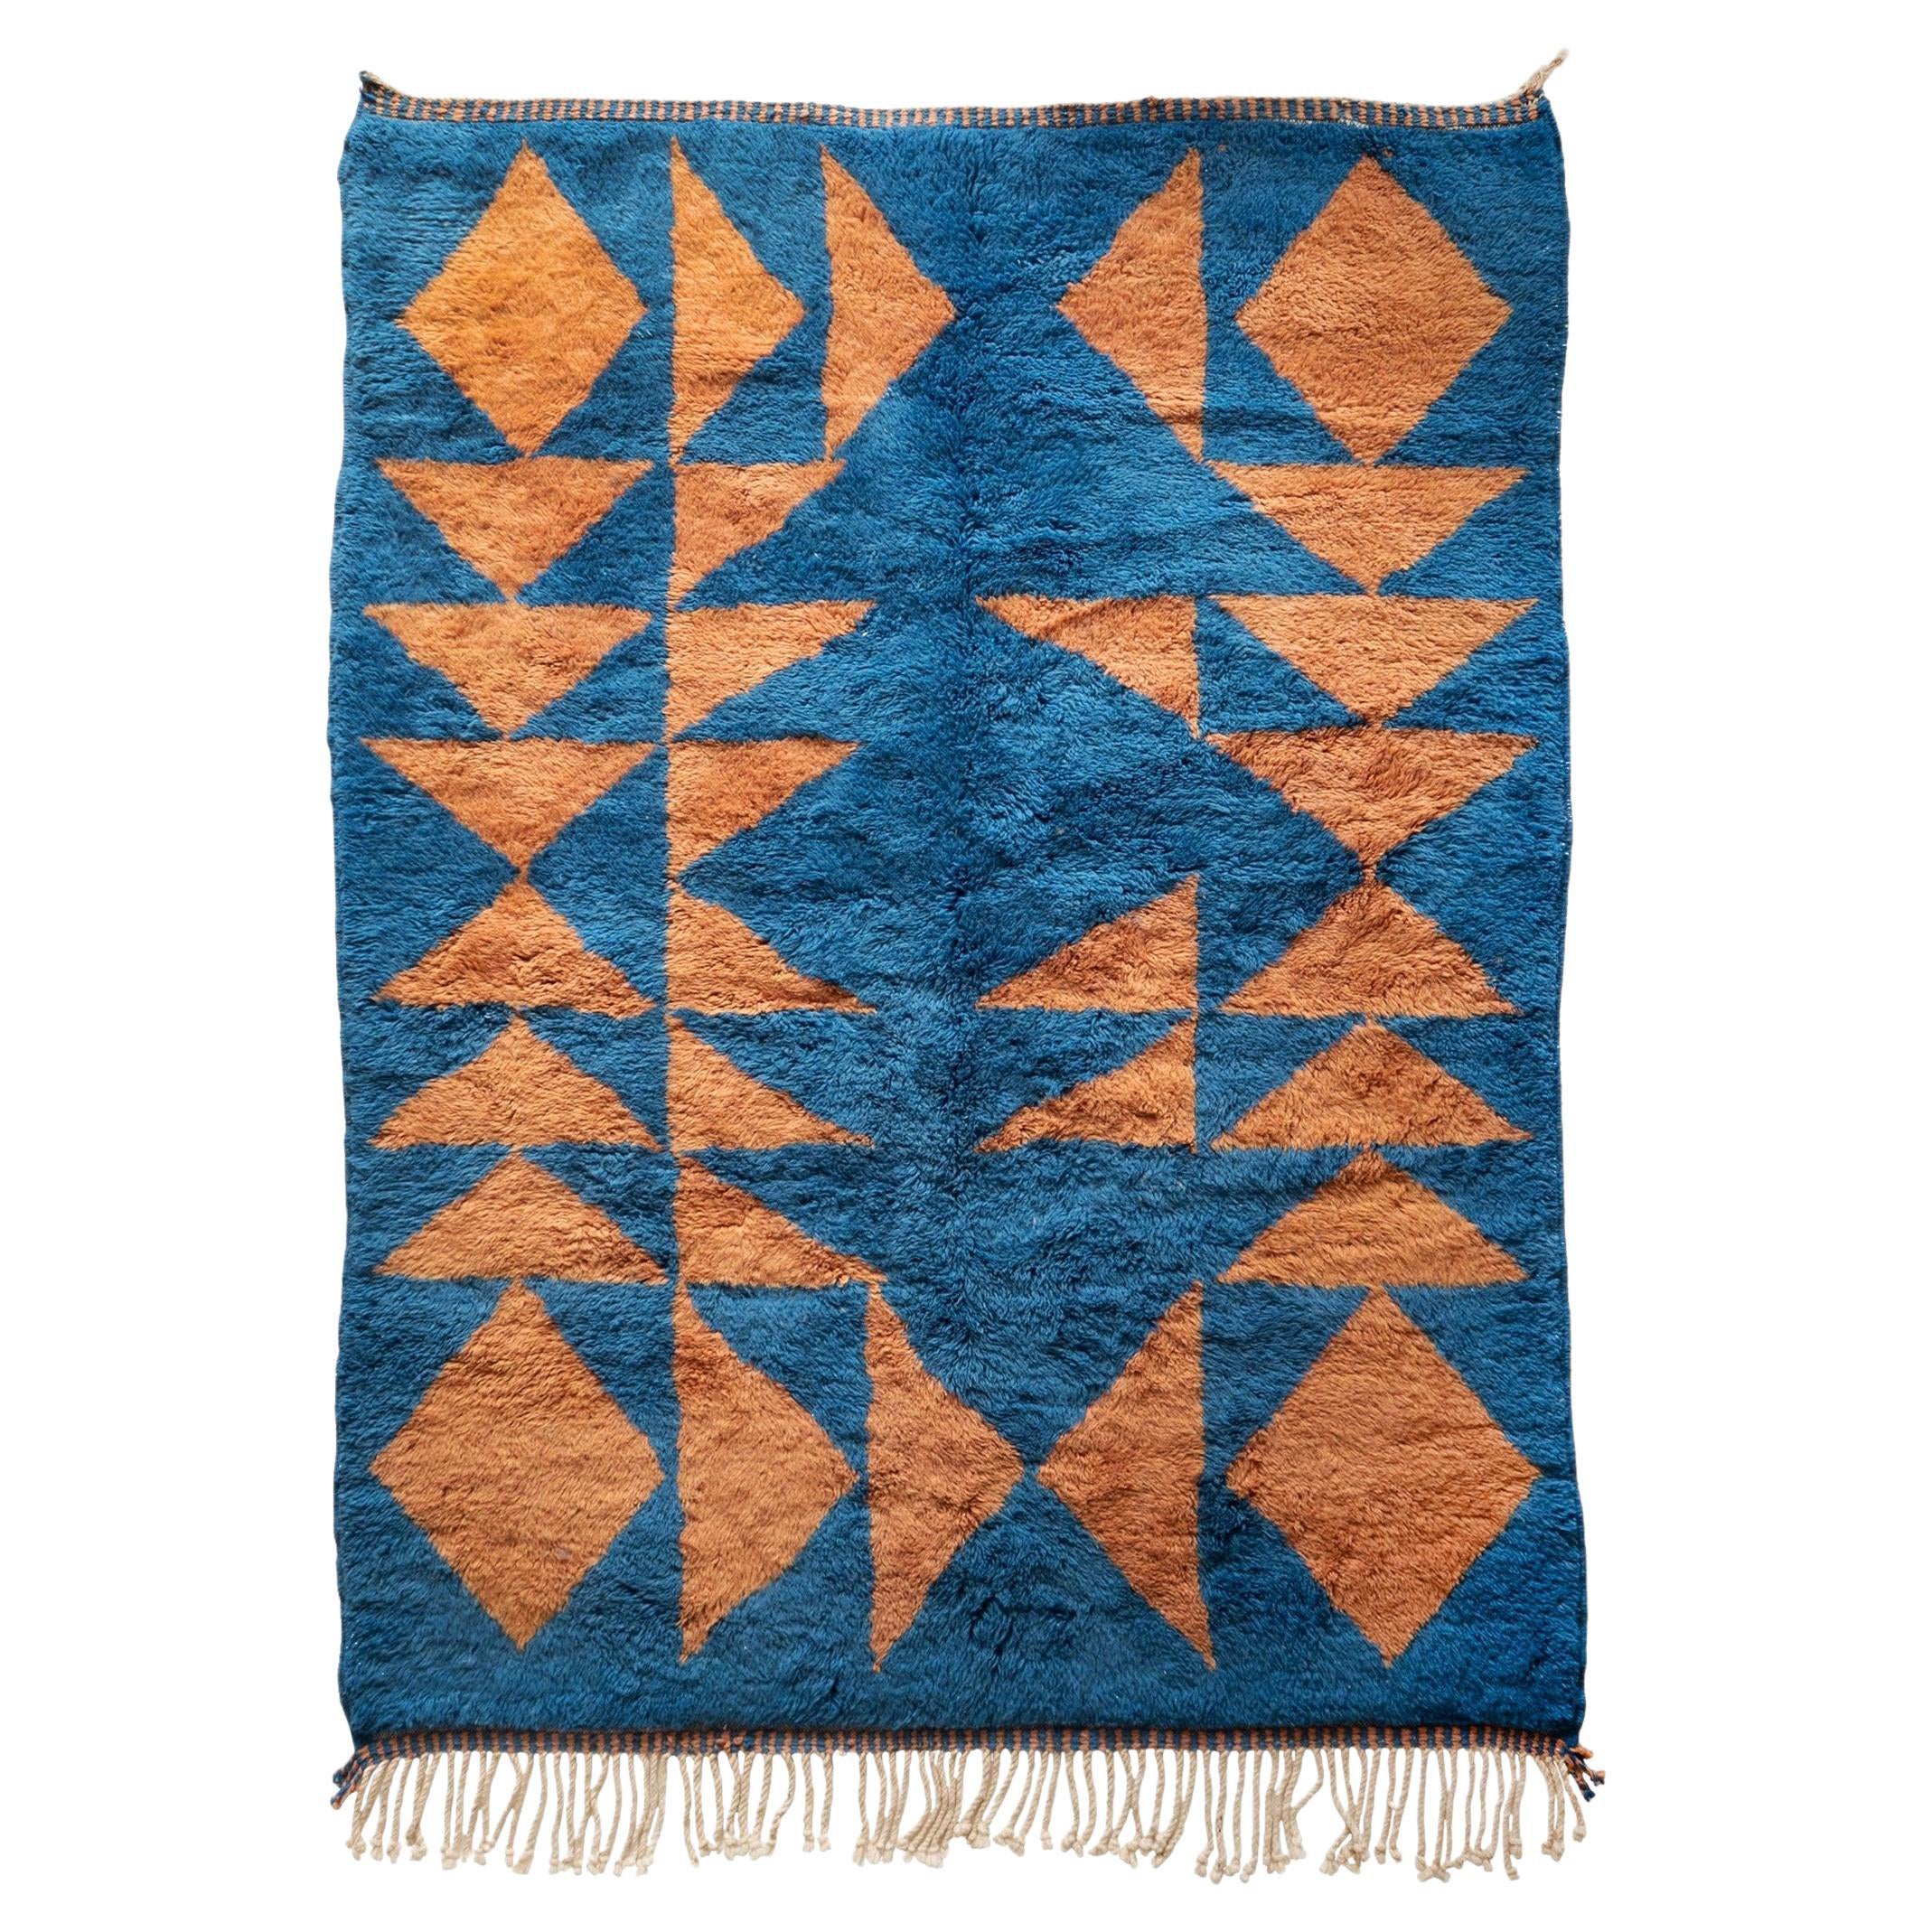 Tapis marocain Beni Mrirt 6'x9', tapis à motifs triangulaires de couleur bleue, fait sur mesure